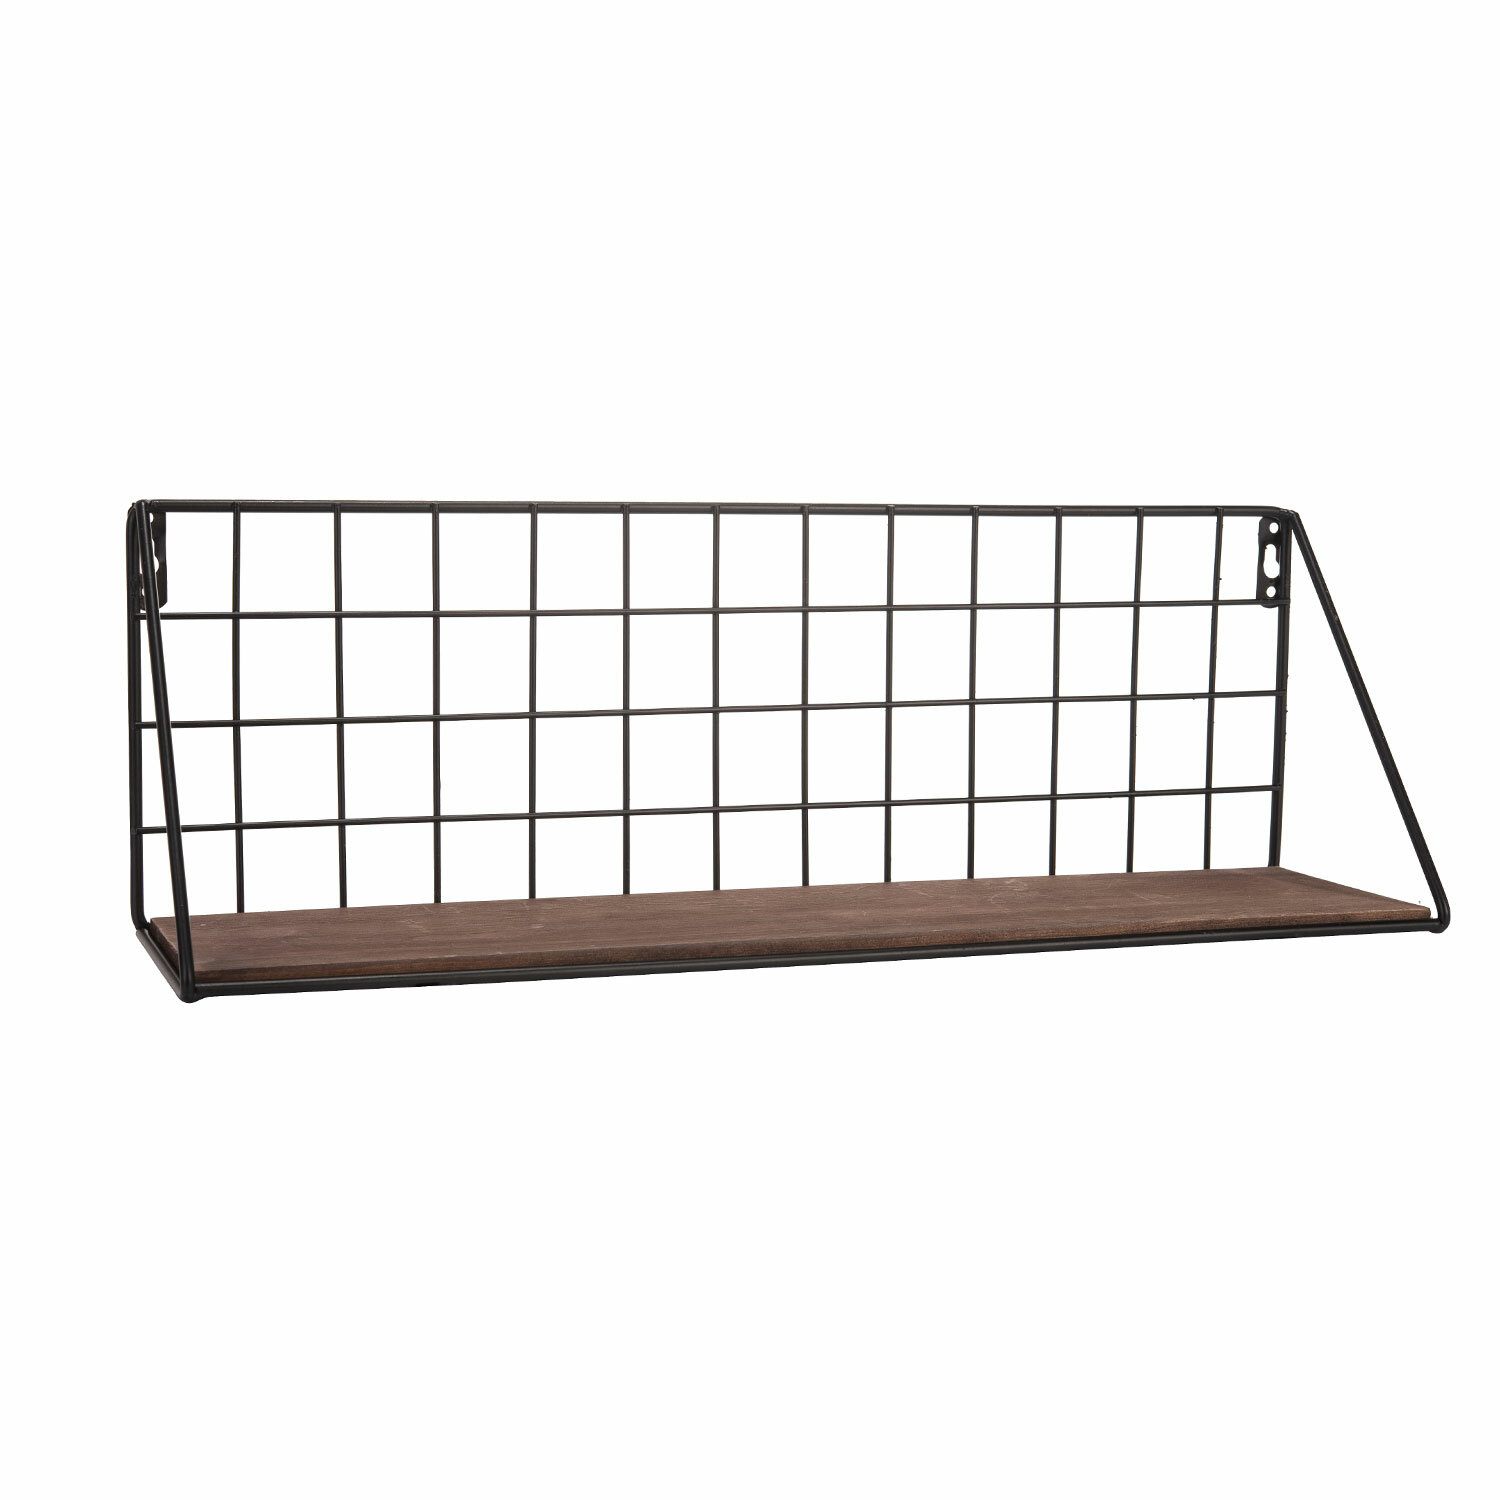 Williston Forge Corsham Metal Grid Wall Shelf Reviews